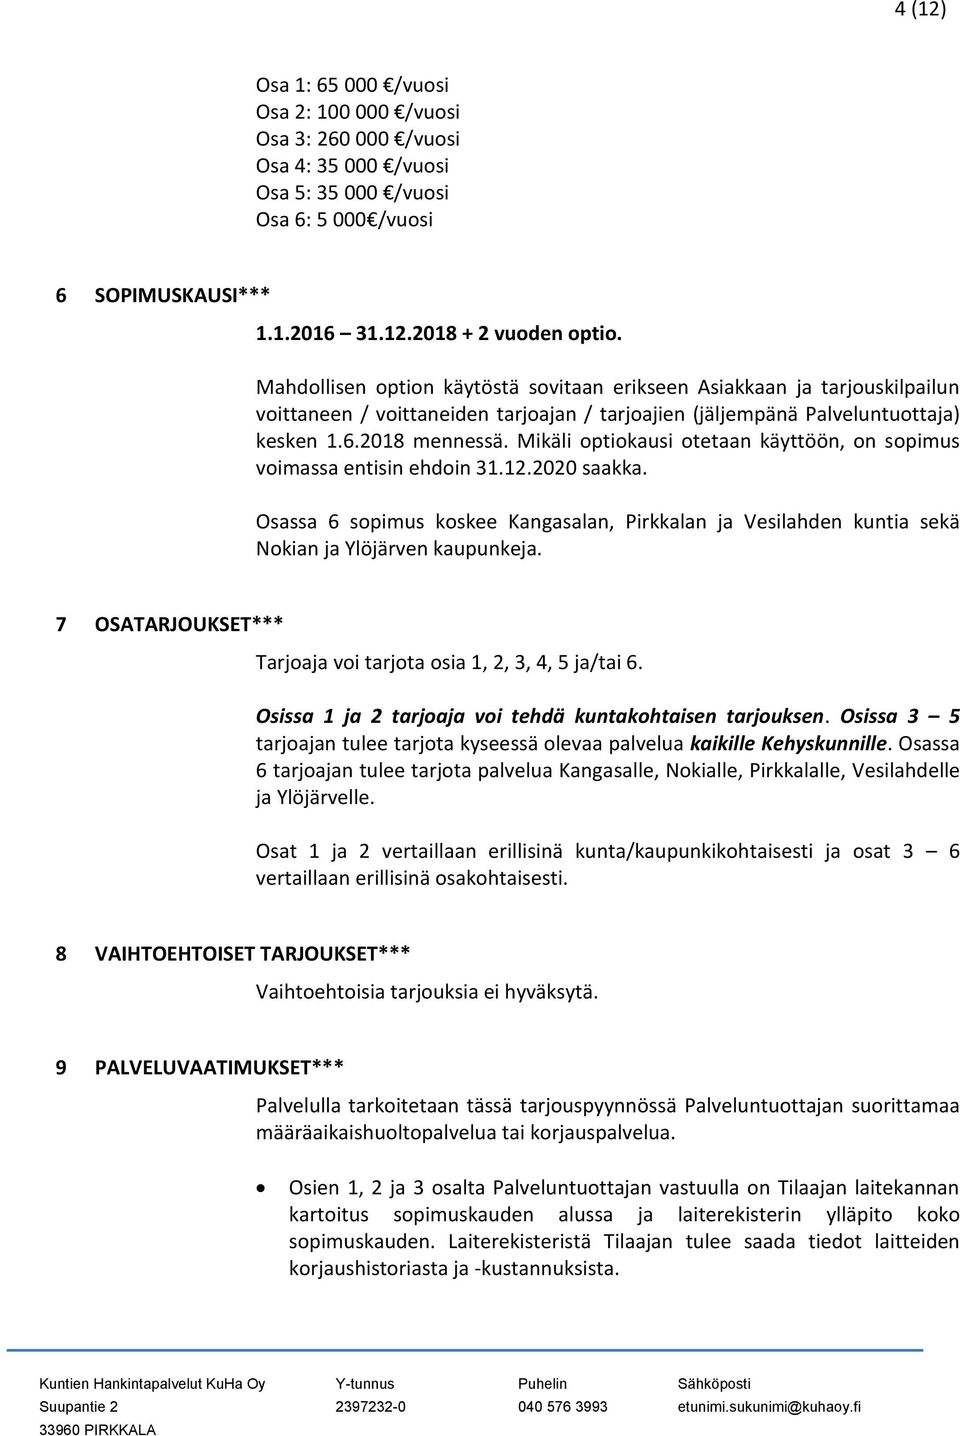 Mikäli optiokausi otetaan käyttöön, on sopimus voimassa entisin ehdoin 31.12.2020 saakka. Osassa 6 sopimus koskee Kangasalan, Pirkkalan ja Vesilahden kuntia sekä Nokian ja Ylöjärven kaupunkeja.